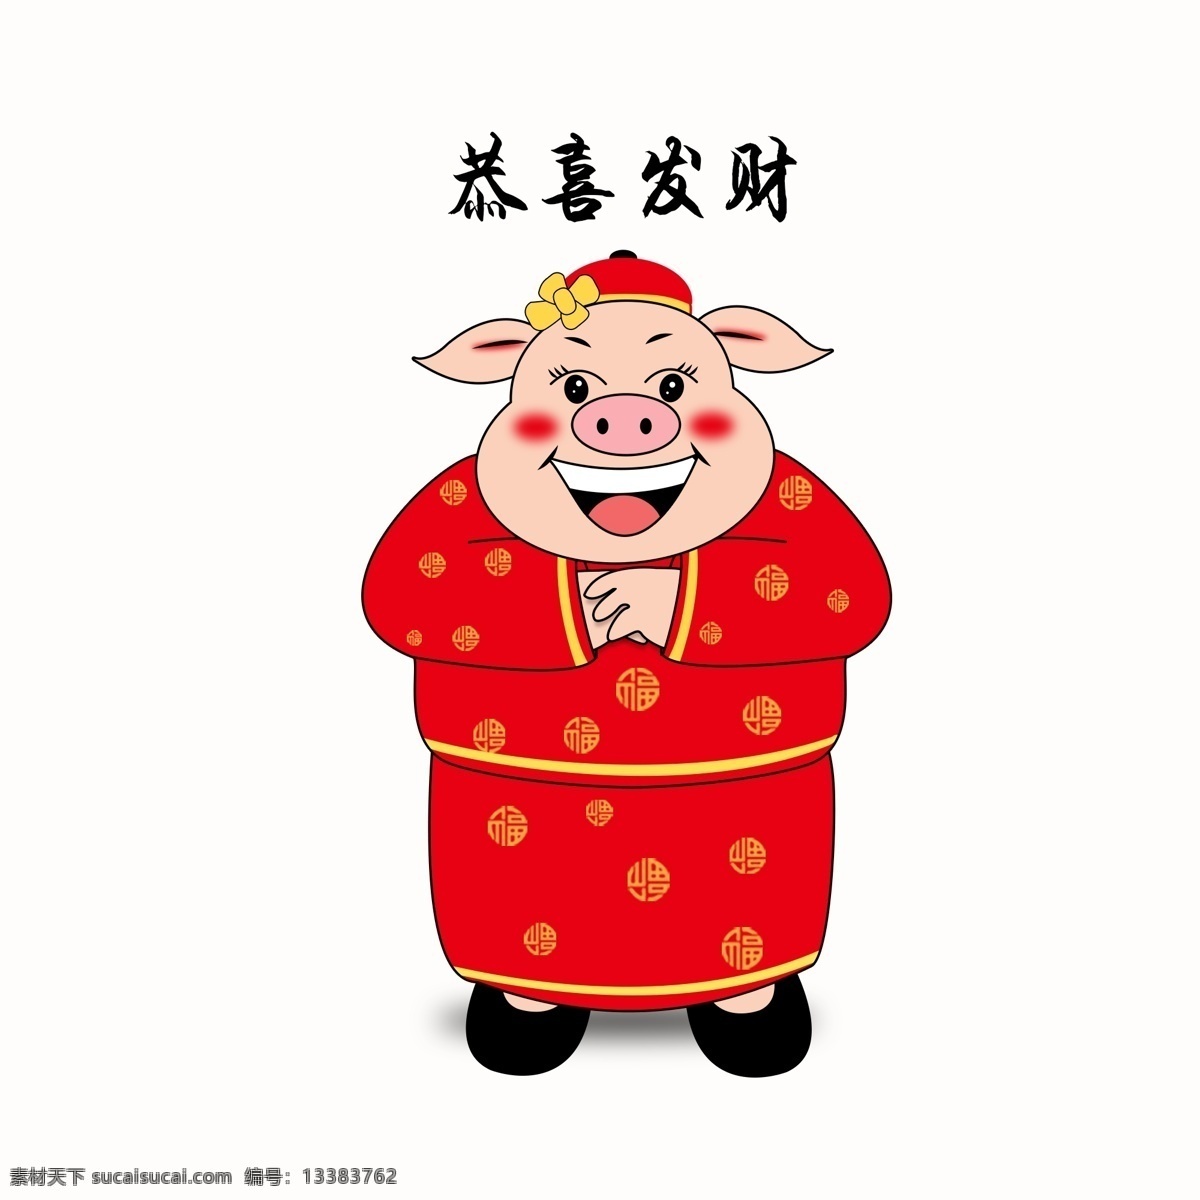 猪年 新年 小 猪 拱手 作揖 祝 恭喜发财 恭喜 拜年 可爱小猪 小猪作揖 喜庆红色小猪